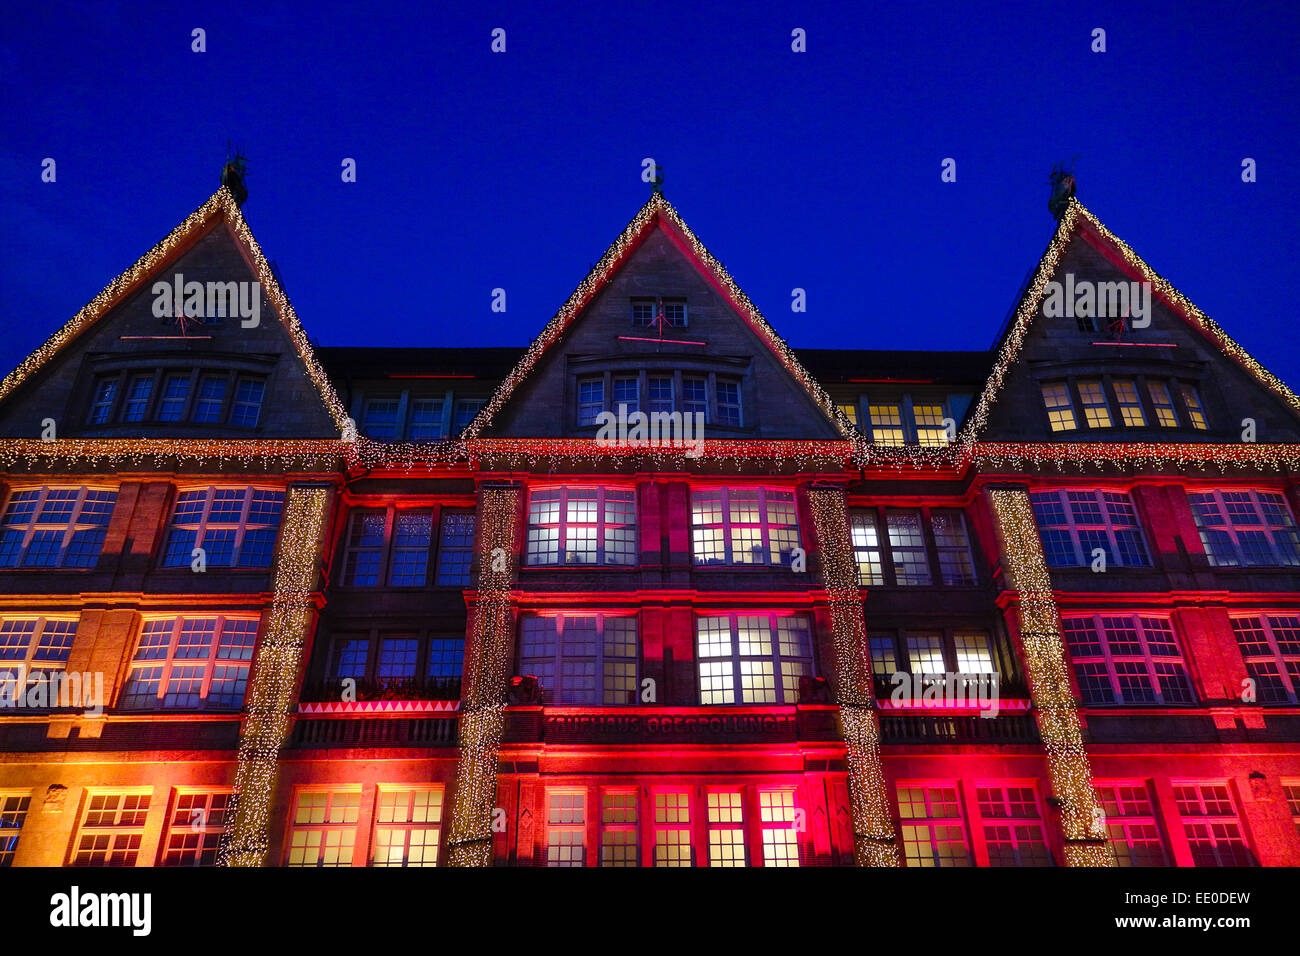 Weihnachtseinkäufe, bunt beleuchtete Kaufhauses la façade des Oberpollinger dans der Neuhauserstrasse à München, le magasinage de Noël Banque D'Images